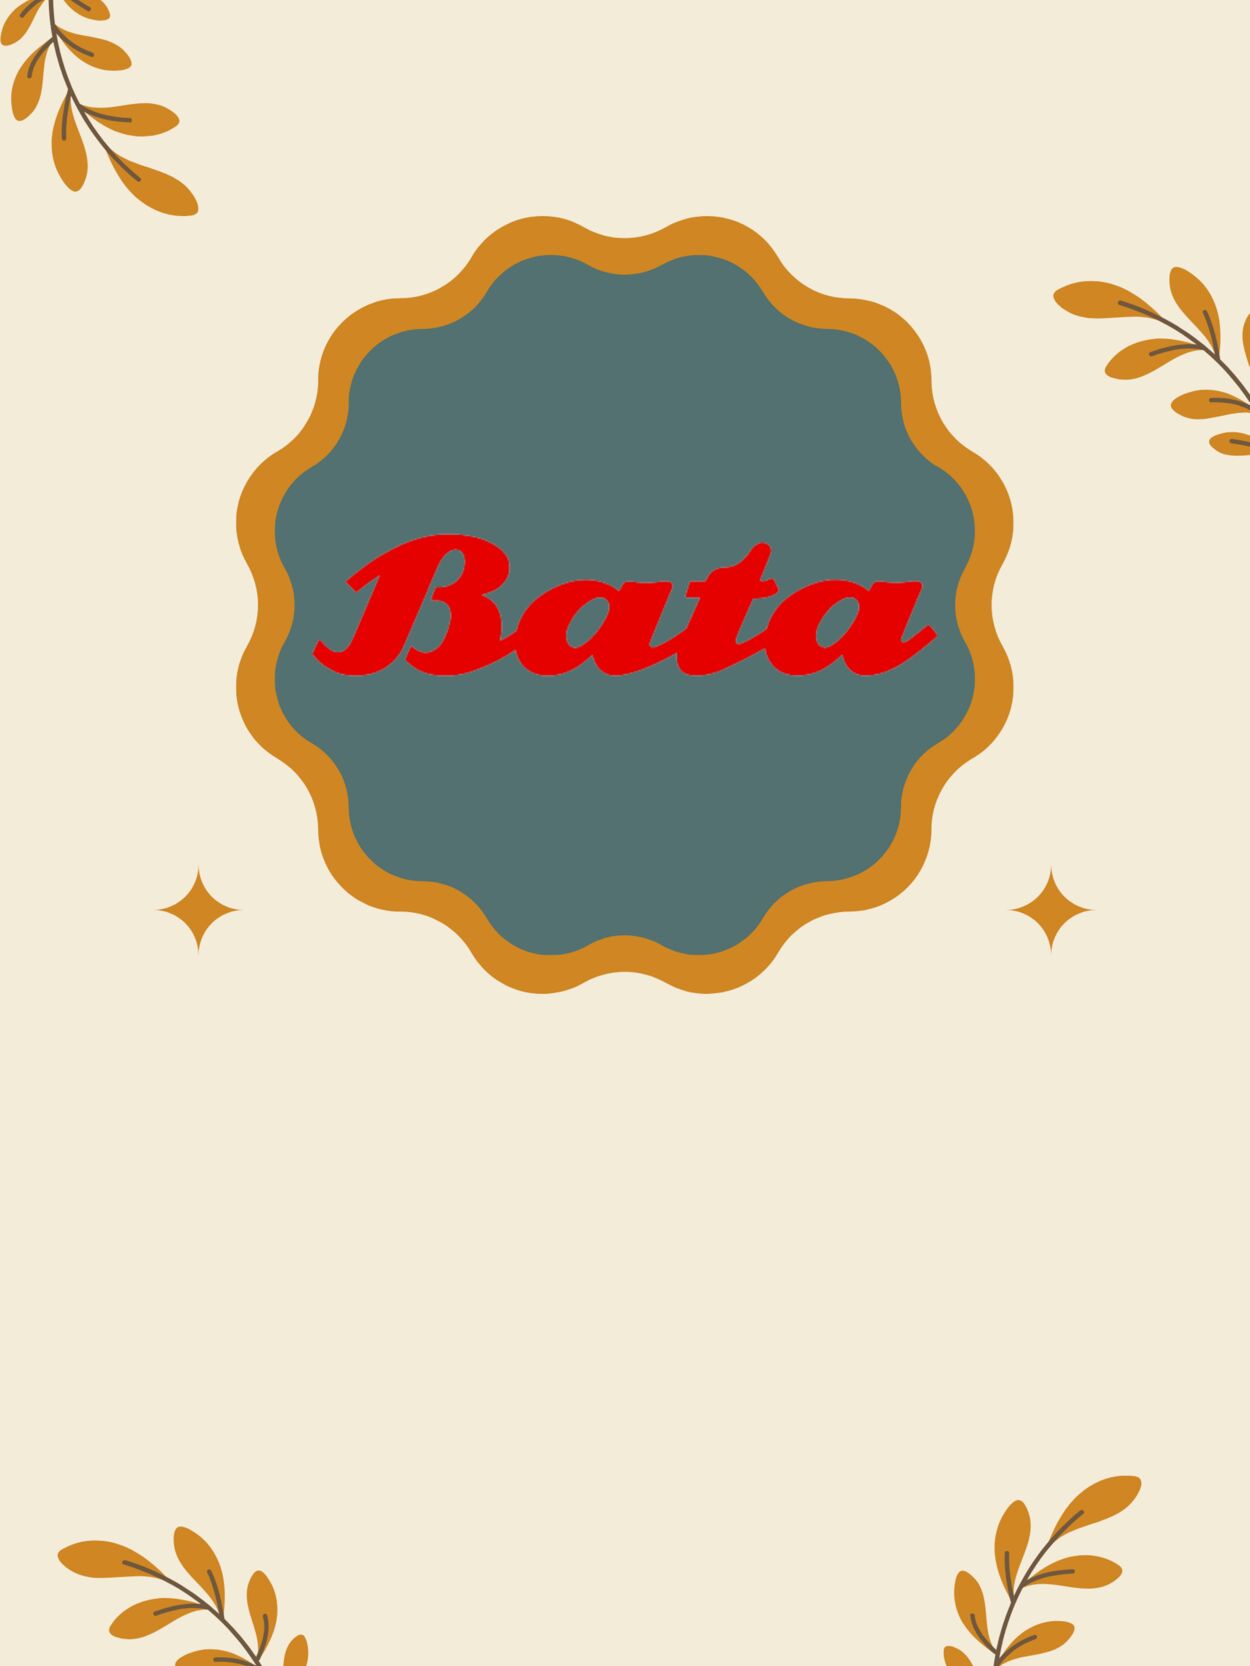 Catálogo Bata 04.01.2023 - 18.01.2023